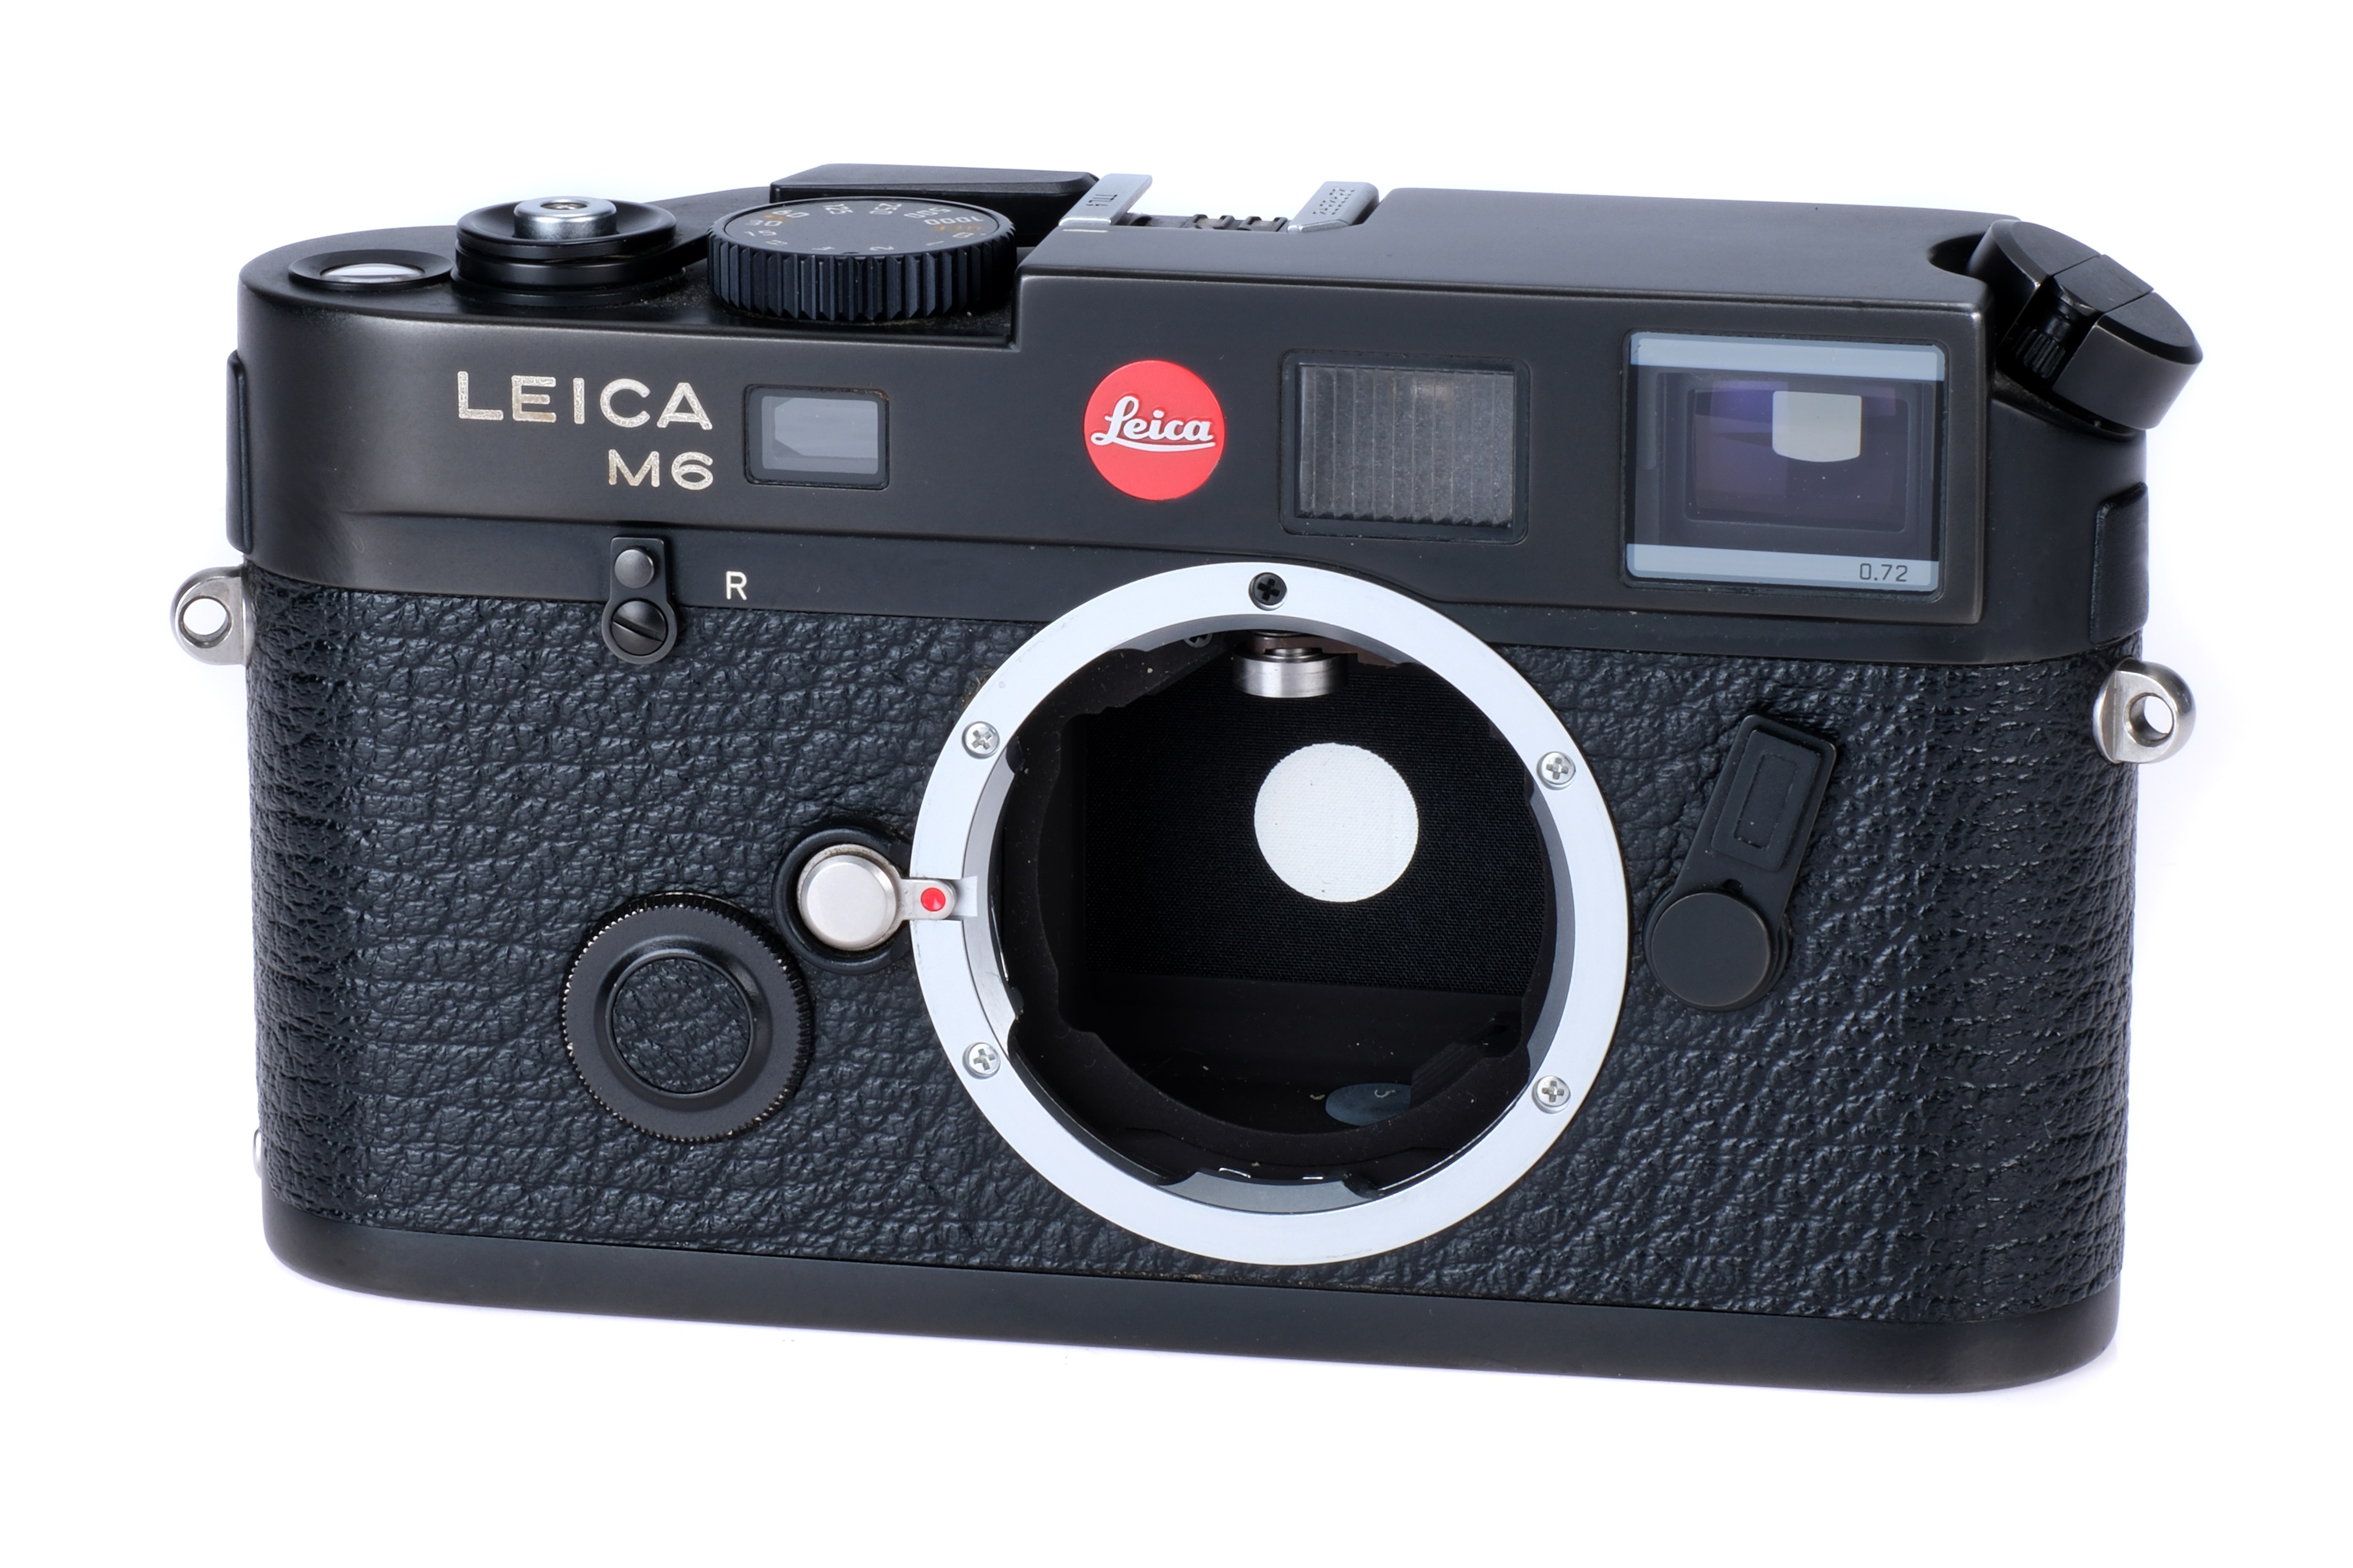 A Leica M6 TTL 0.72 Rangefinder Camera Body,